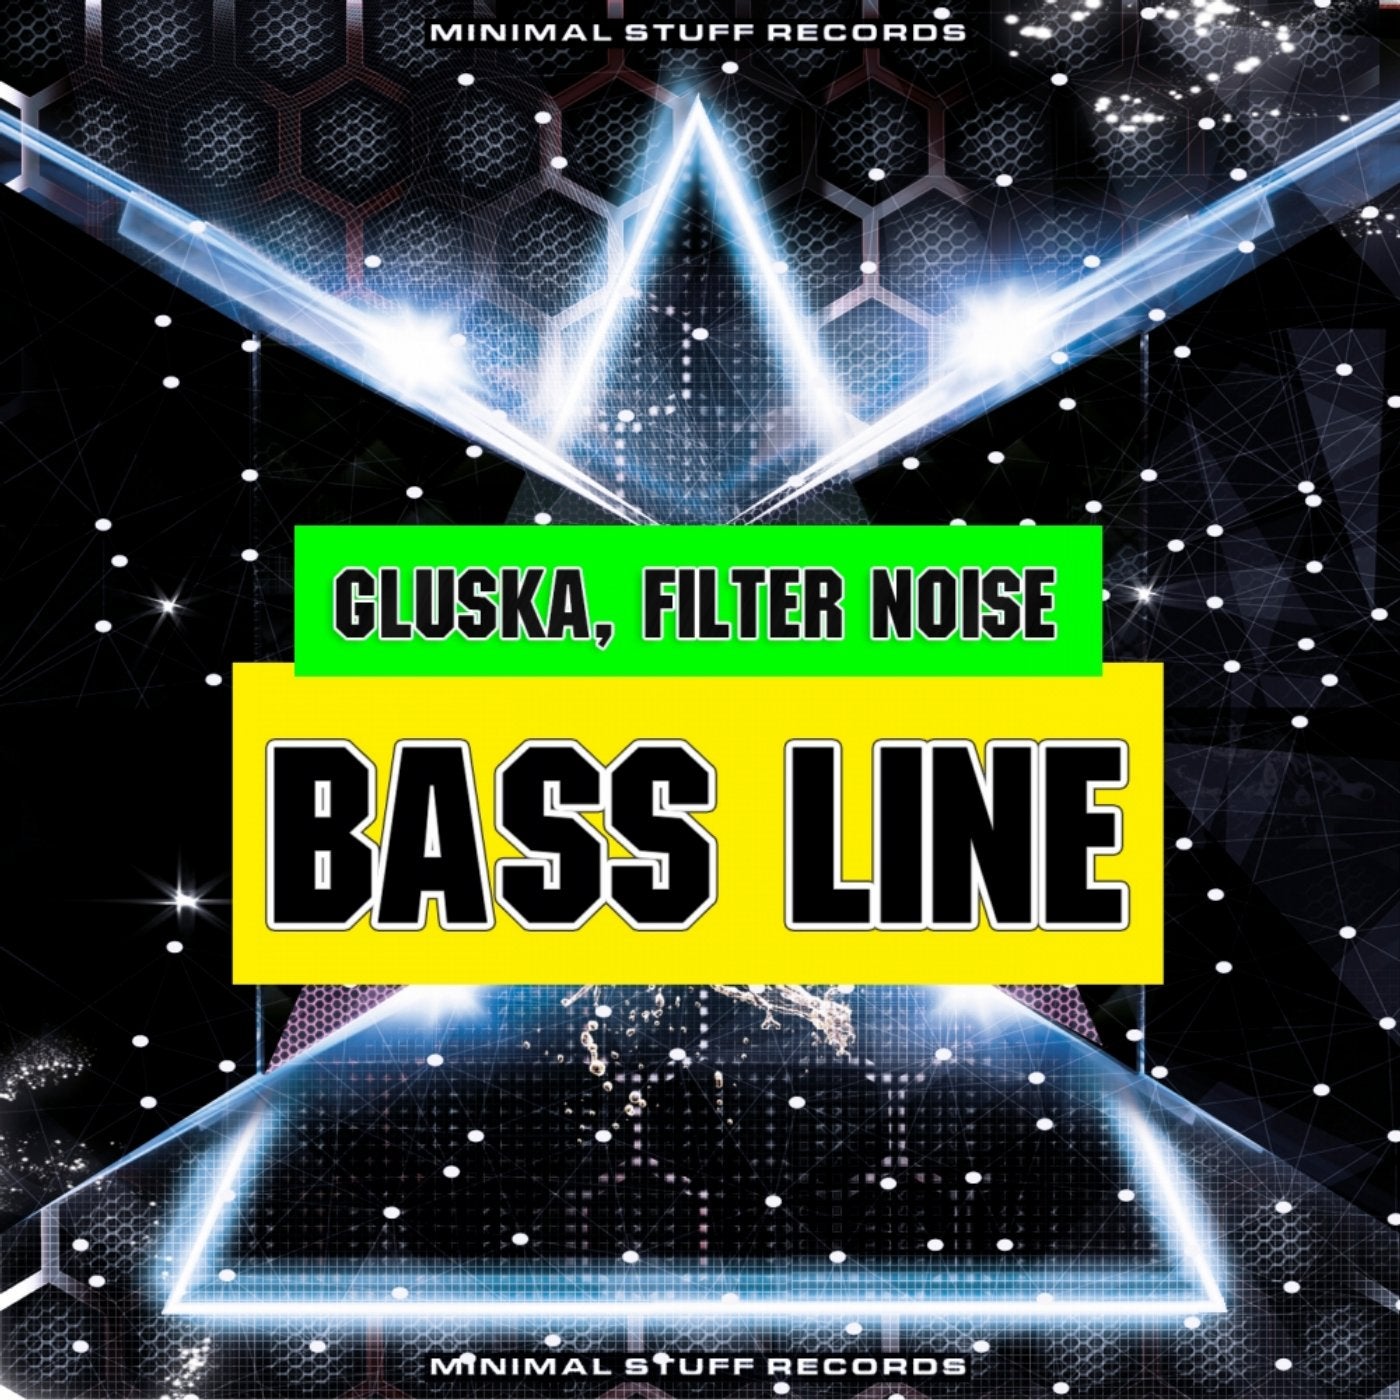 Bass Line